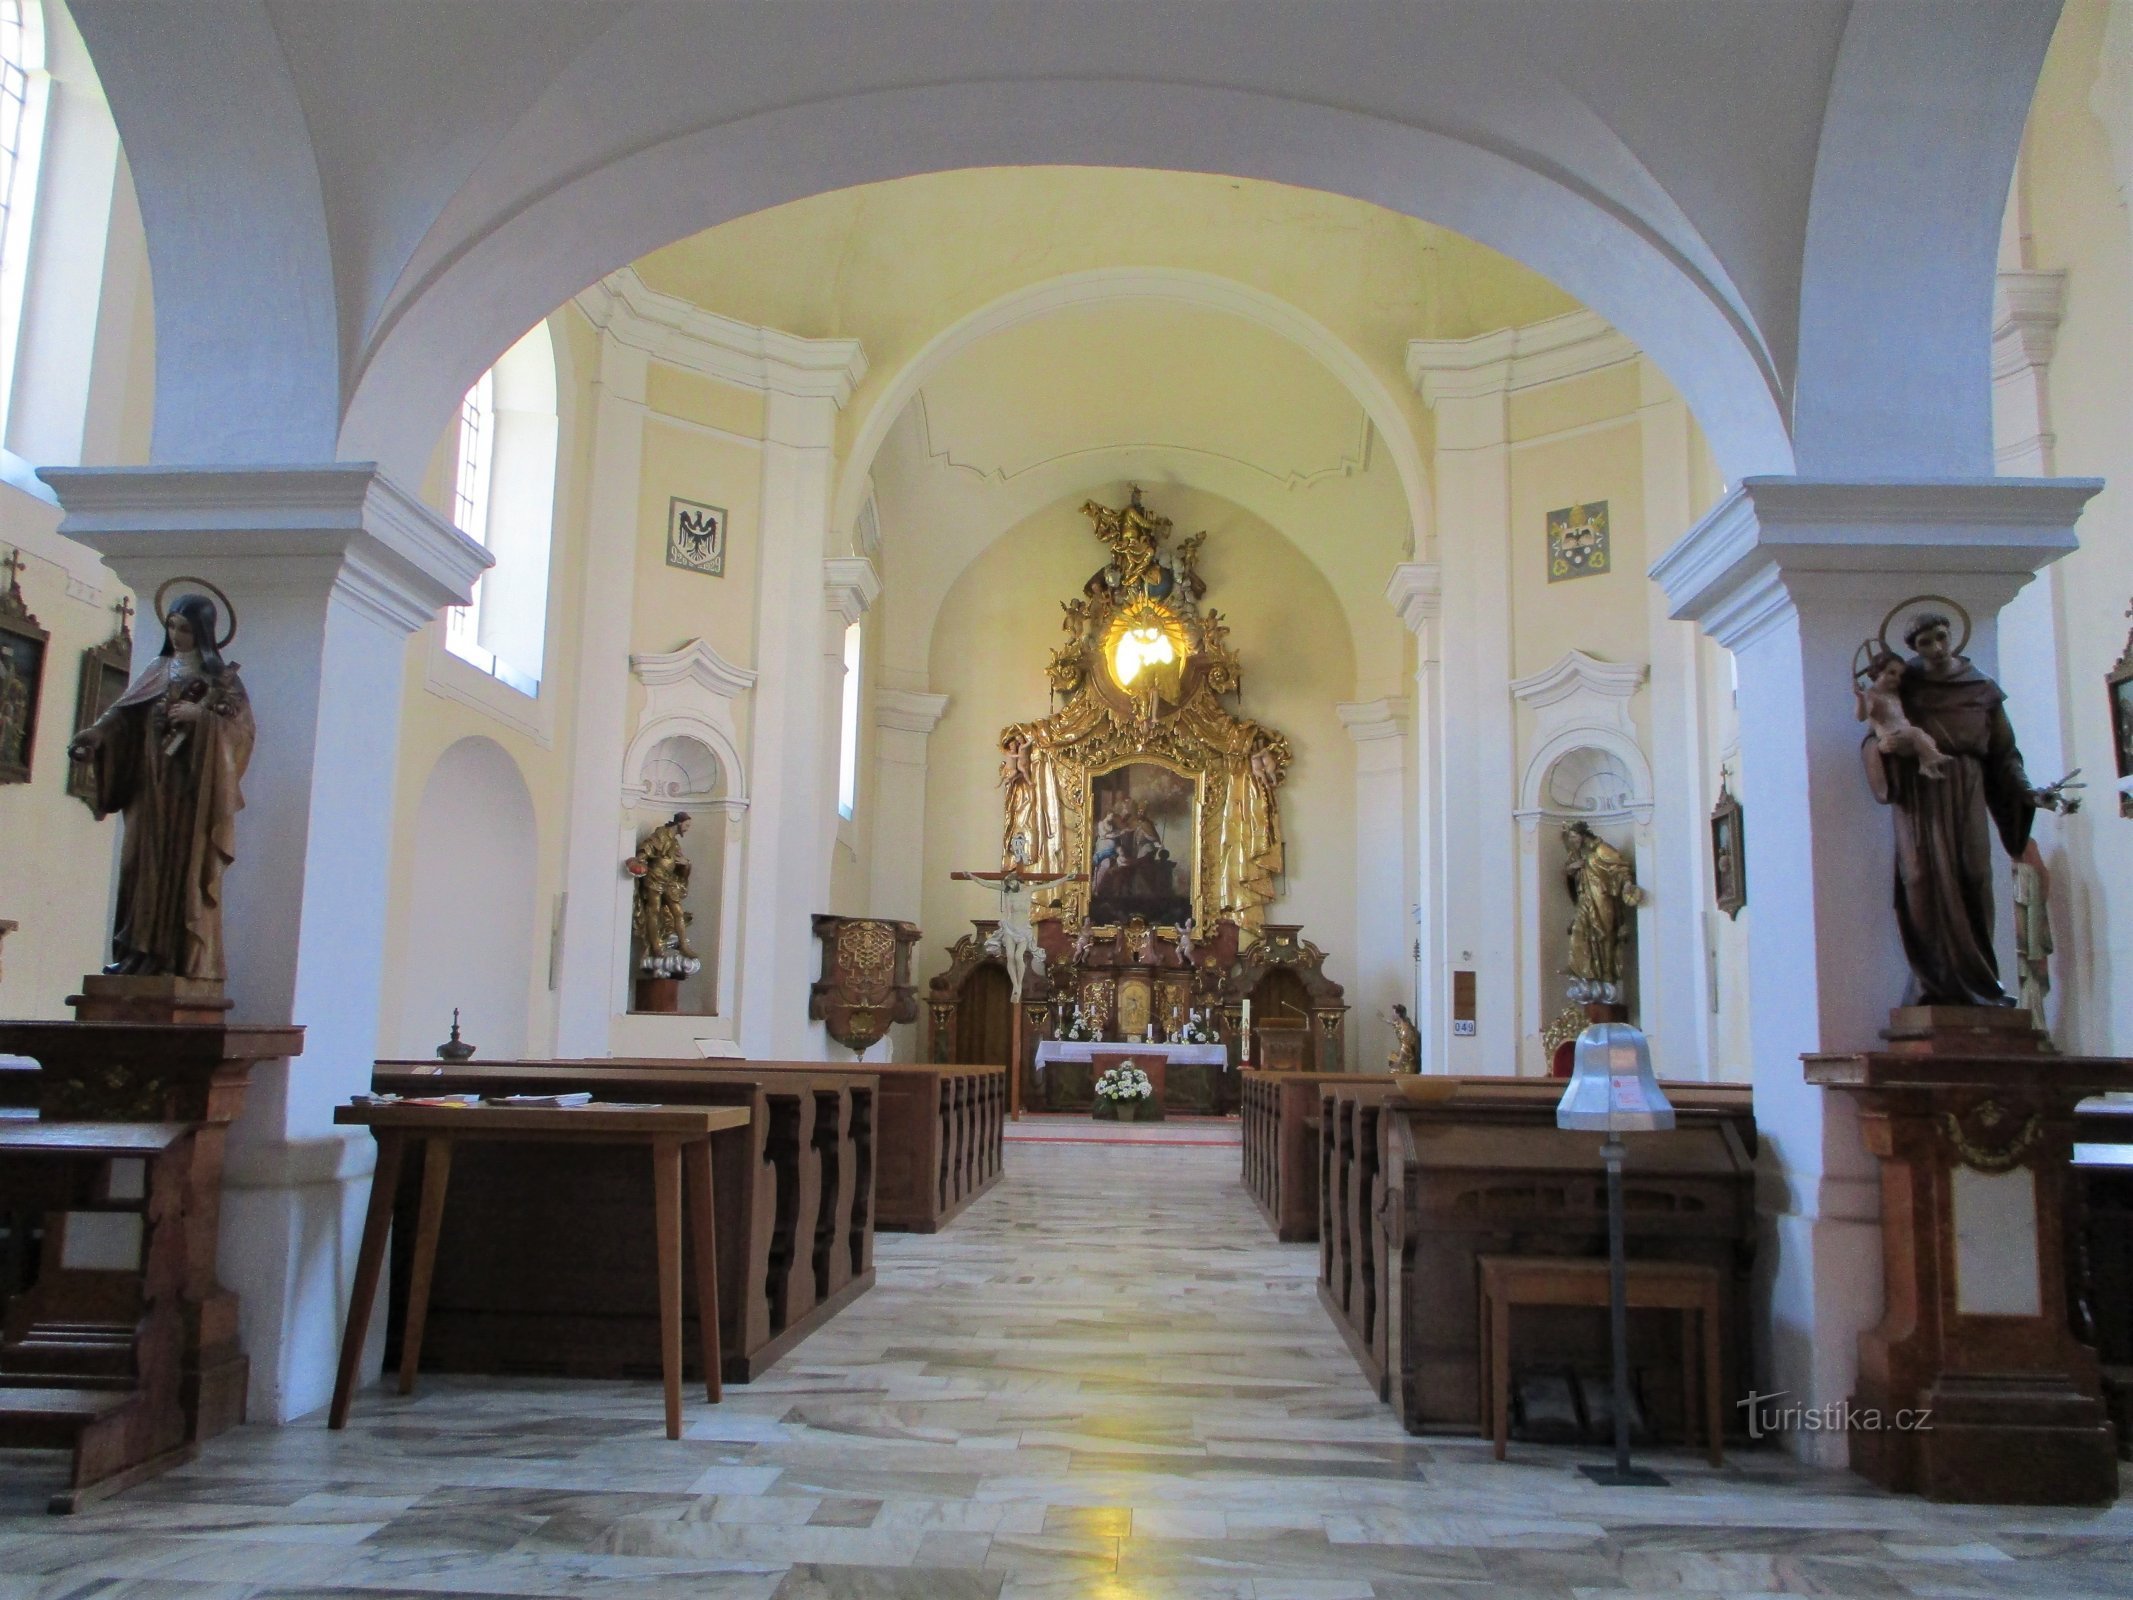 Nội thất của nhà thờ St. Martina (Holice, 16.5.2020/XNUMX/XNUMX)